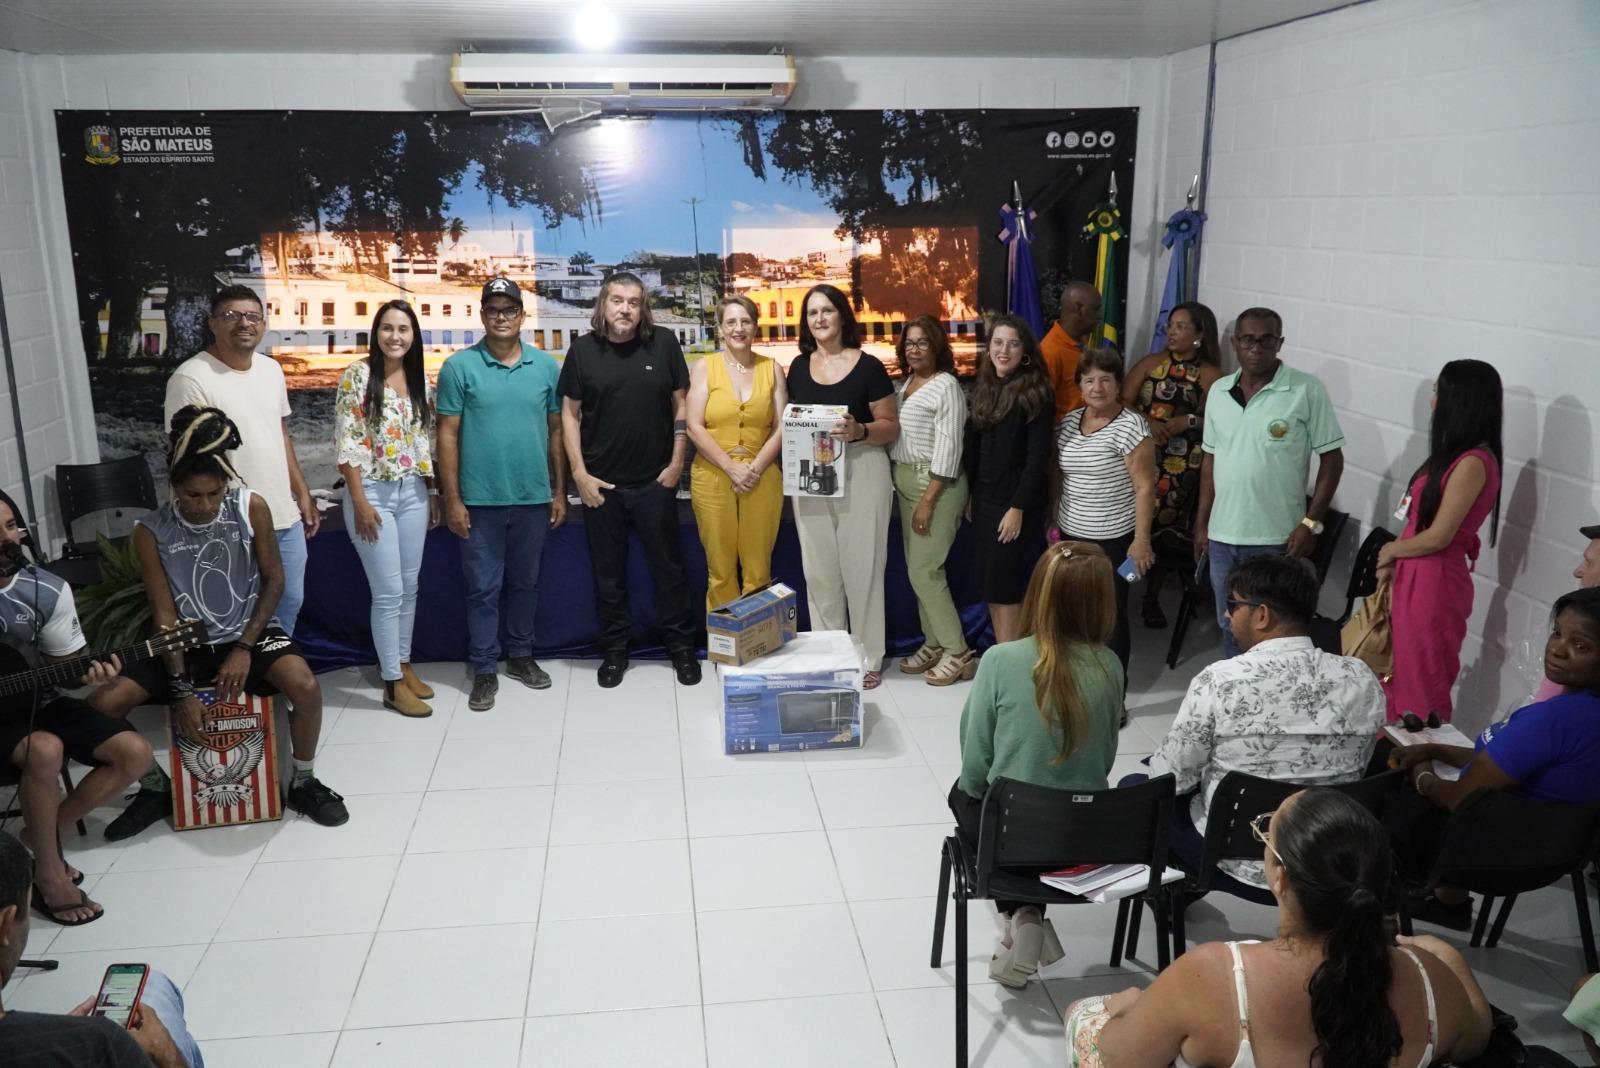 Prefeitura de São Mateus no ES realiza entrega de equipamentos e renova parcerias com entidades assistenciais da sociedade civil organizada